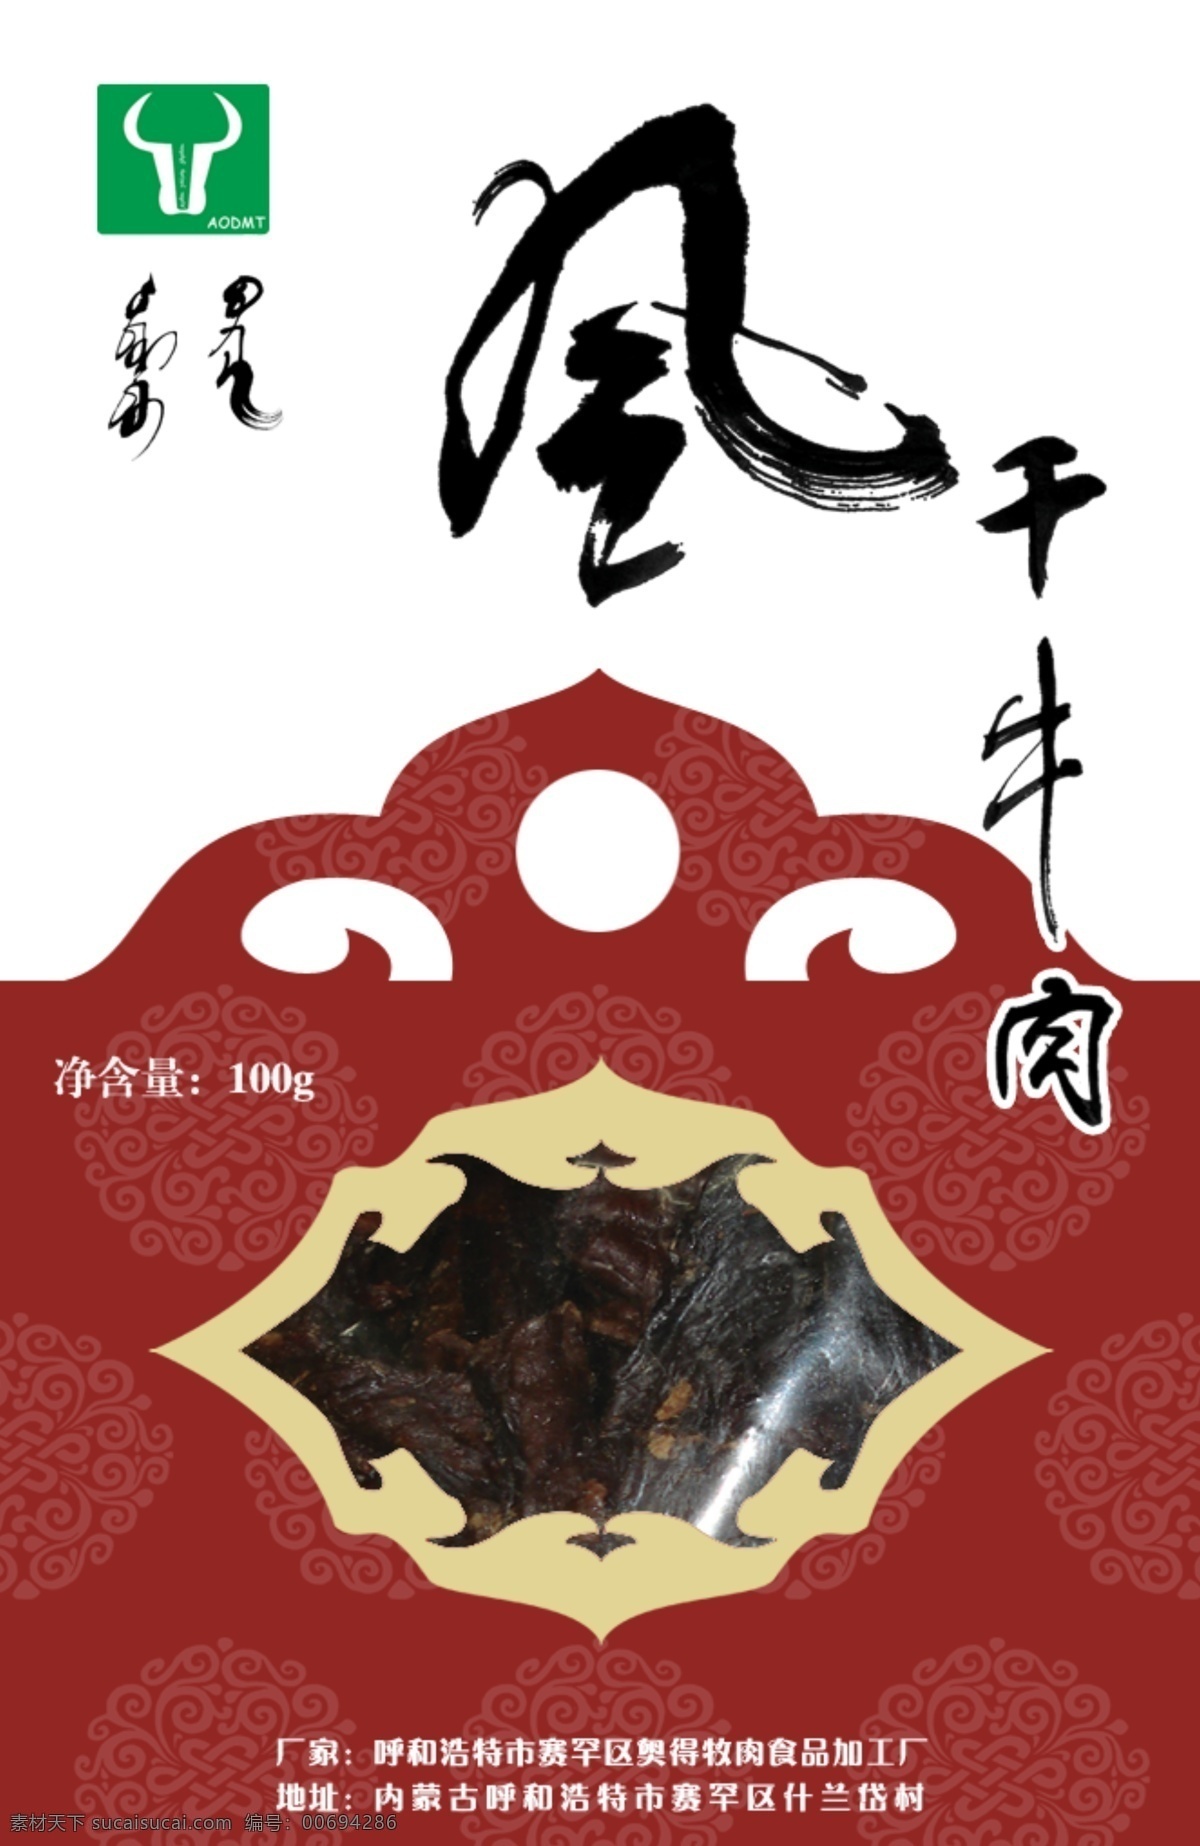 蒙古族 牛肉干 包装 封面 蒙古族元素 包装设计 dm单页 白色